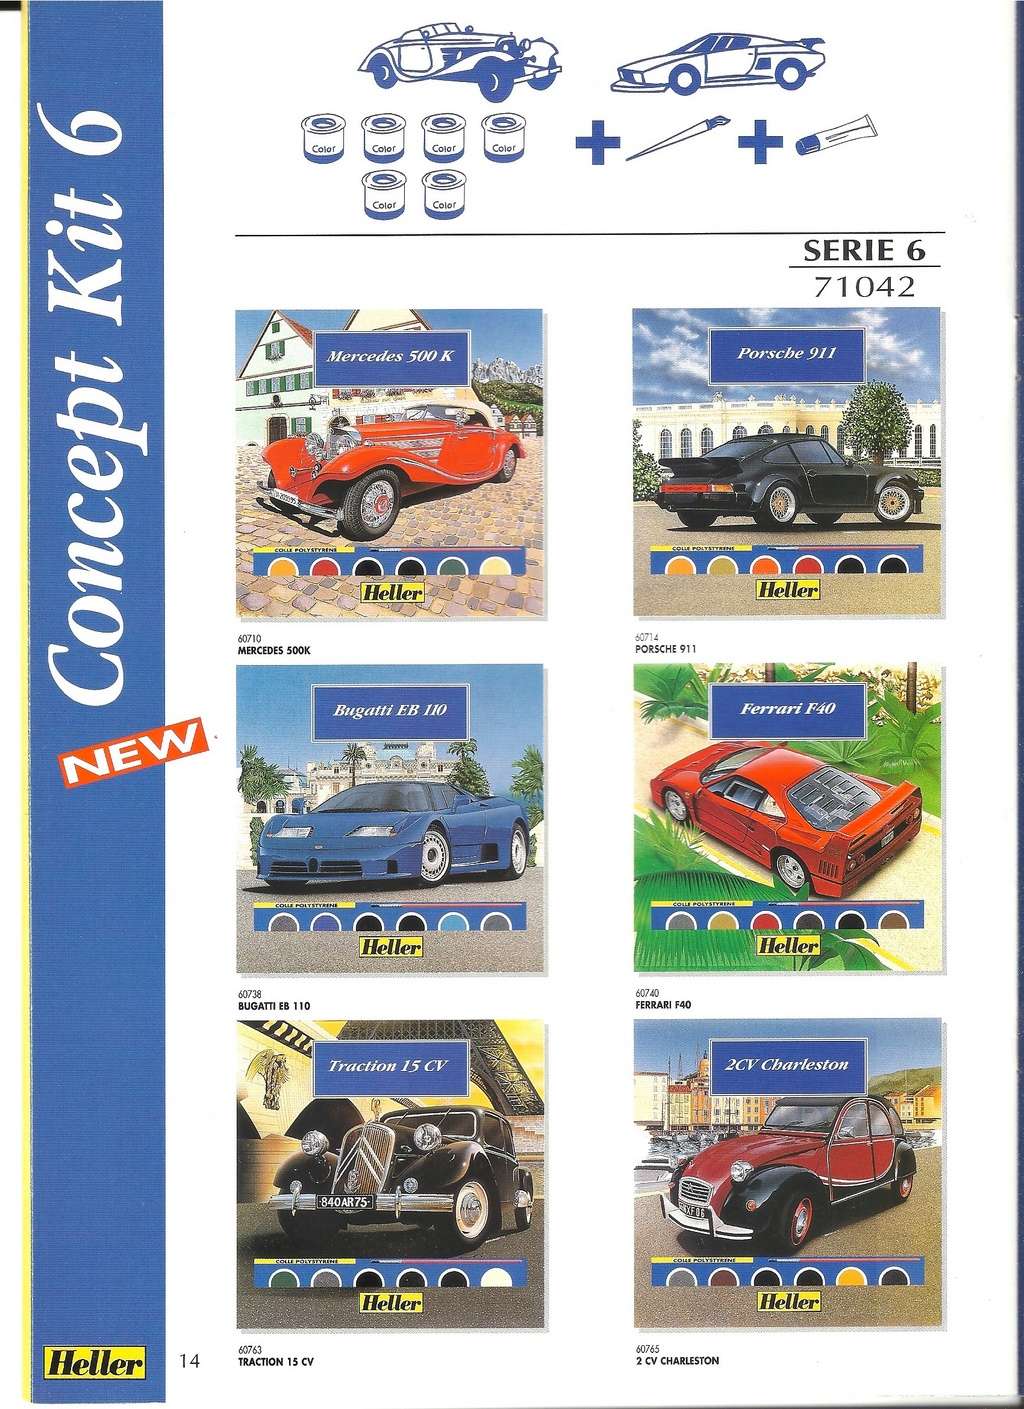 [1996] Catalogue de la gamme KIT 1996 Helle595